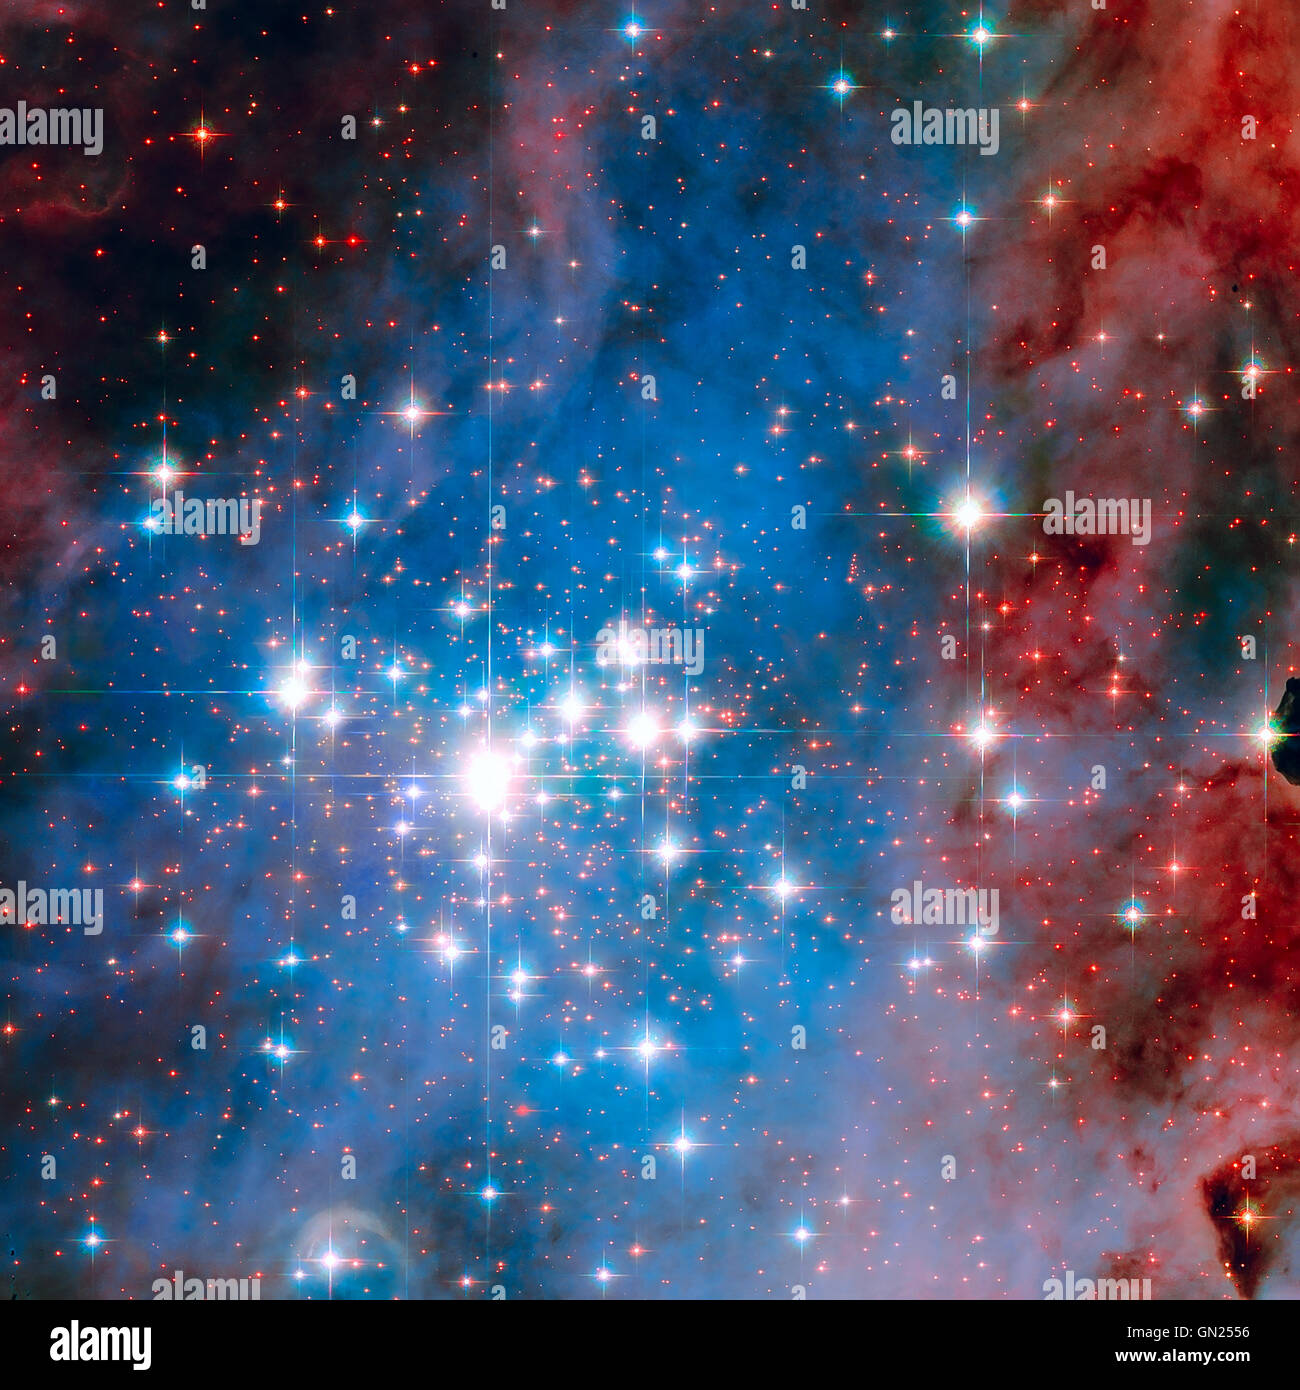 Trumpler 14 amas d'étoiles. L'un des plus grands rassemblements de sex, massive et lumineuse étoile dans la Voie lactée. Banque D'Images